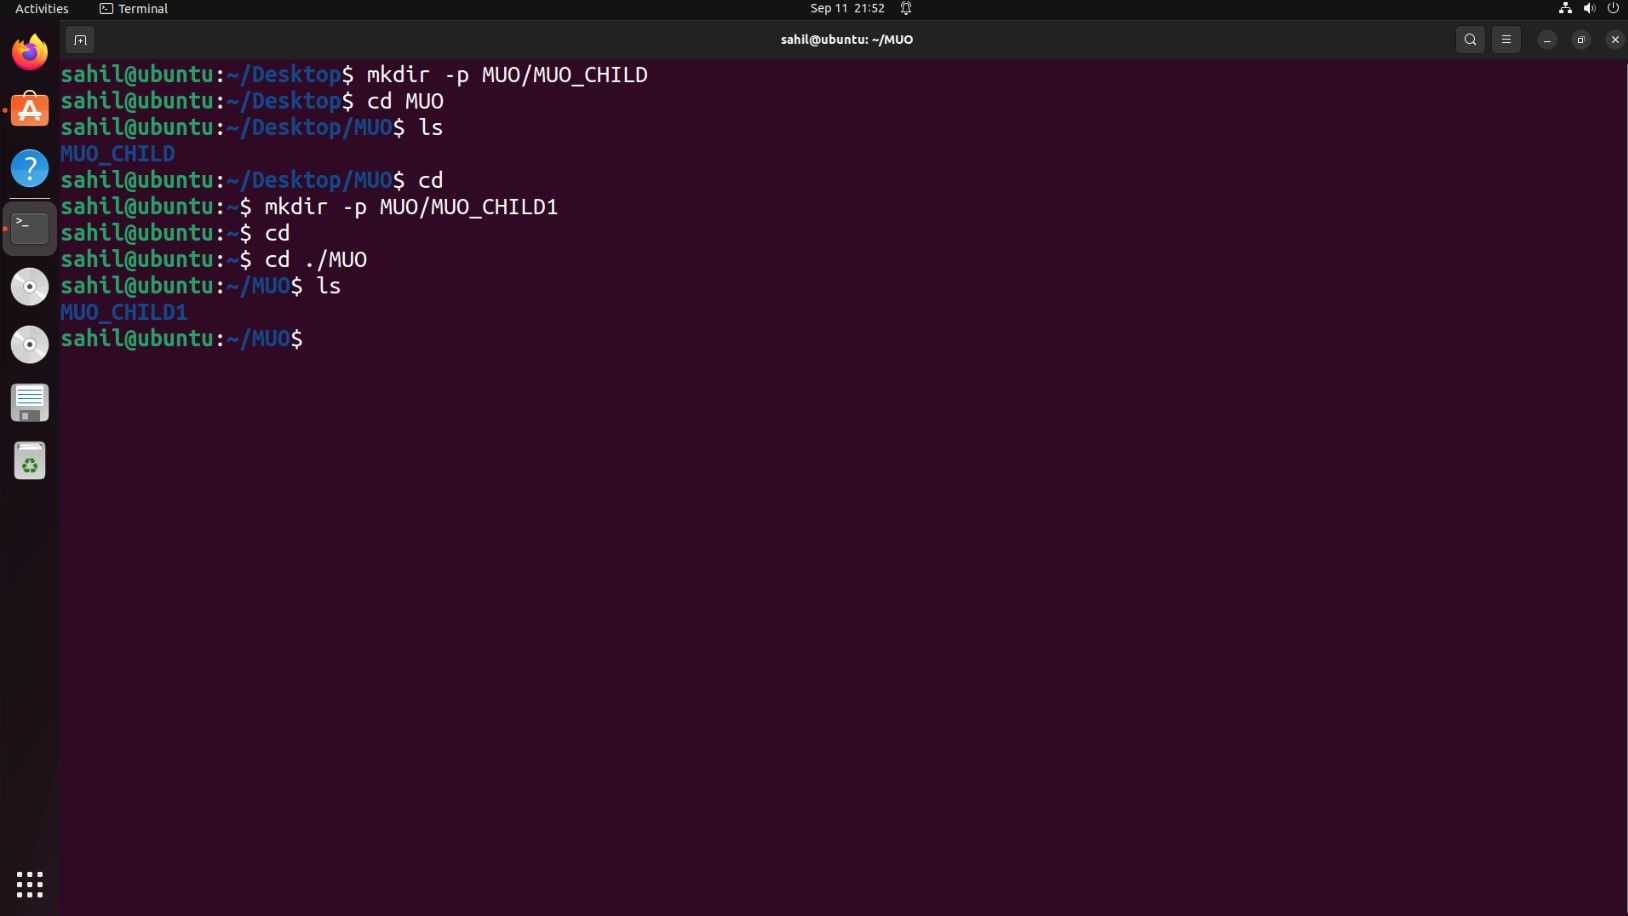 Janela do terminal do Ubuntu com trechos de código para criar um diretório pai 